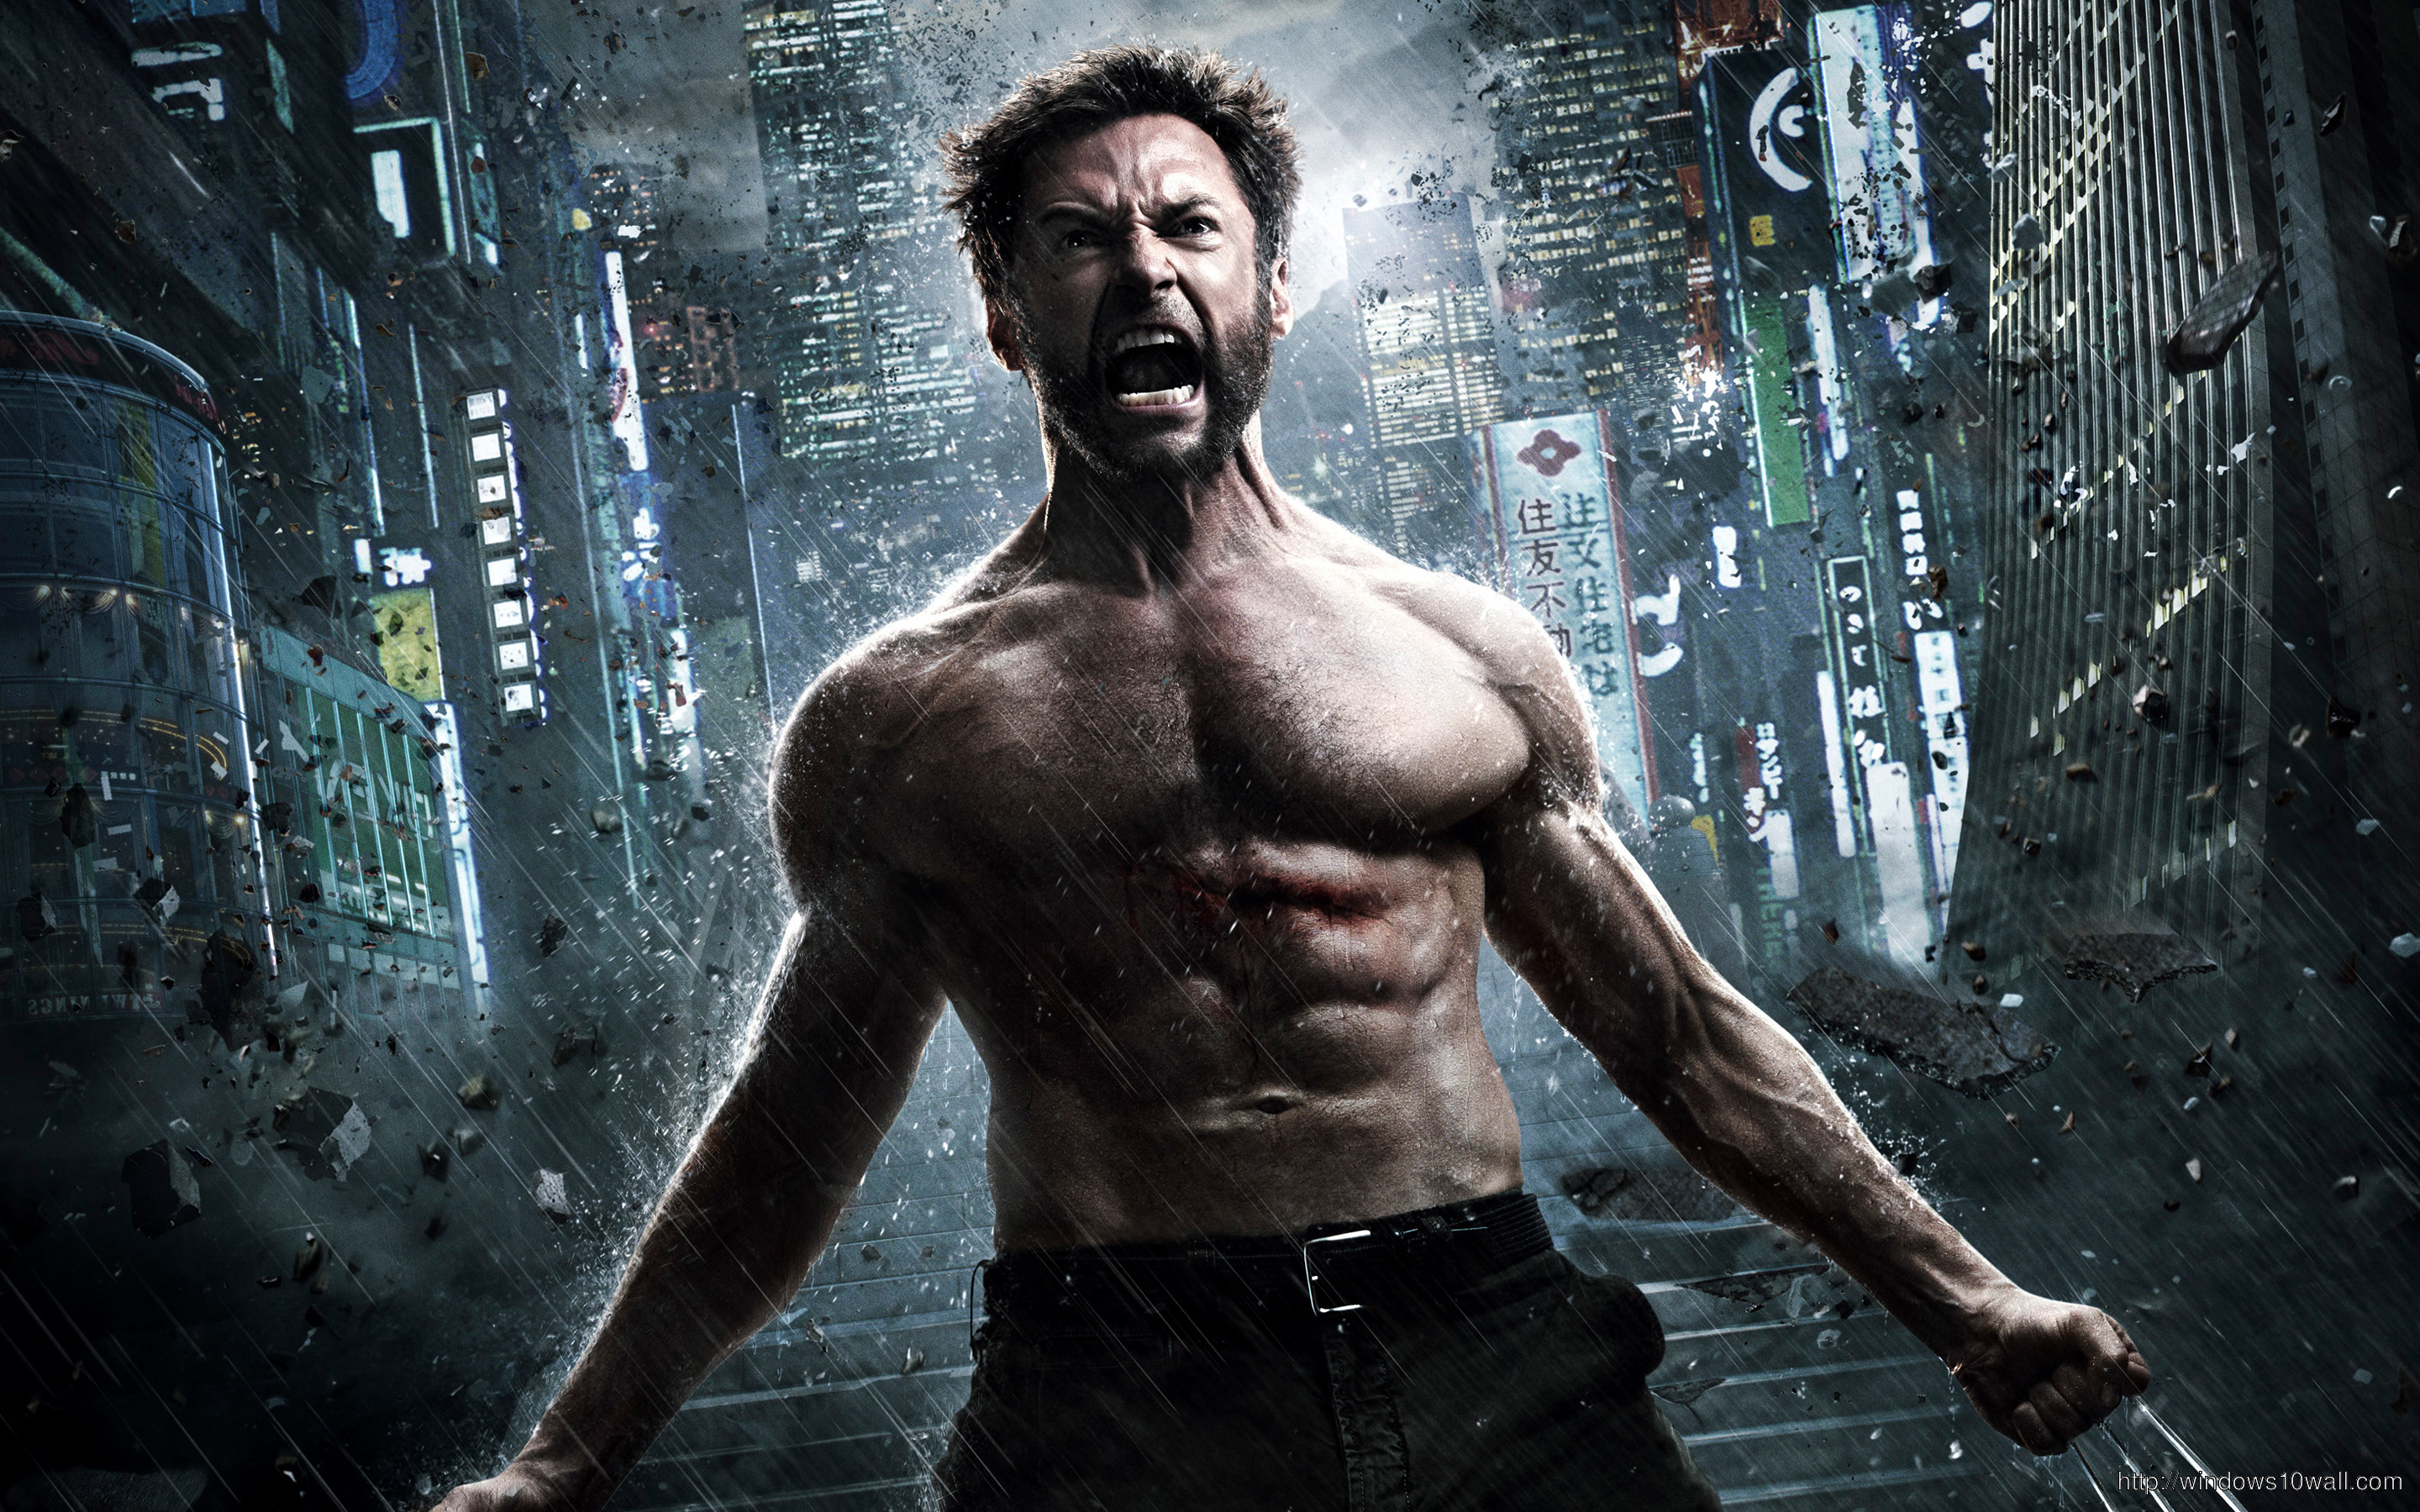 The Wolverine Movie Wallpaper